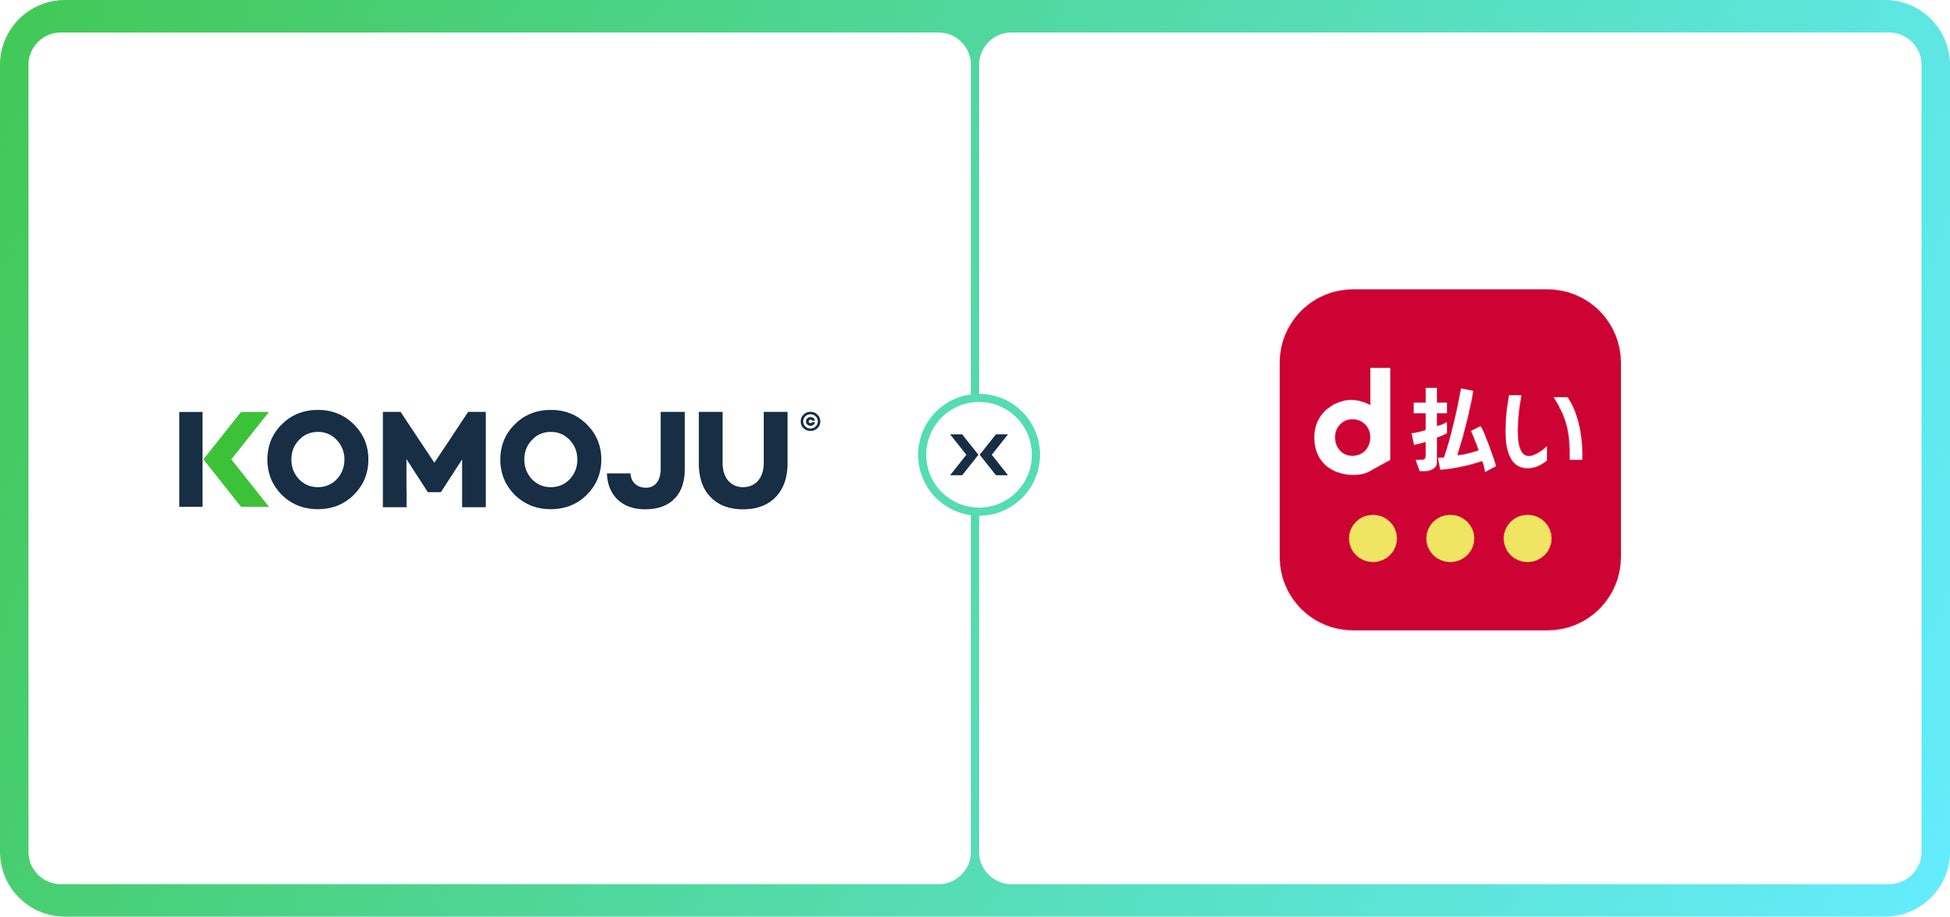 デジタル決済プラットフォーム「KOMOJU」、5,700万人以上が利用するスマホ決済サービス『d 払い』をShopifyで構築するECサイト向けに提供開始